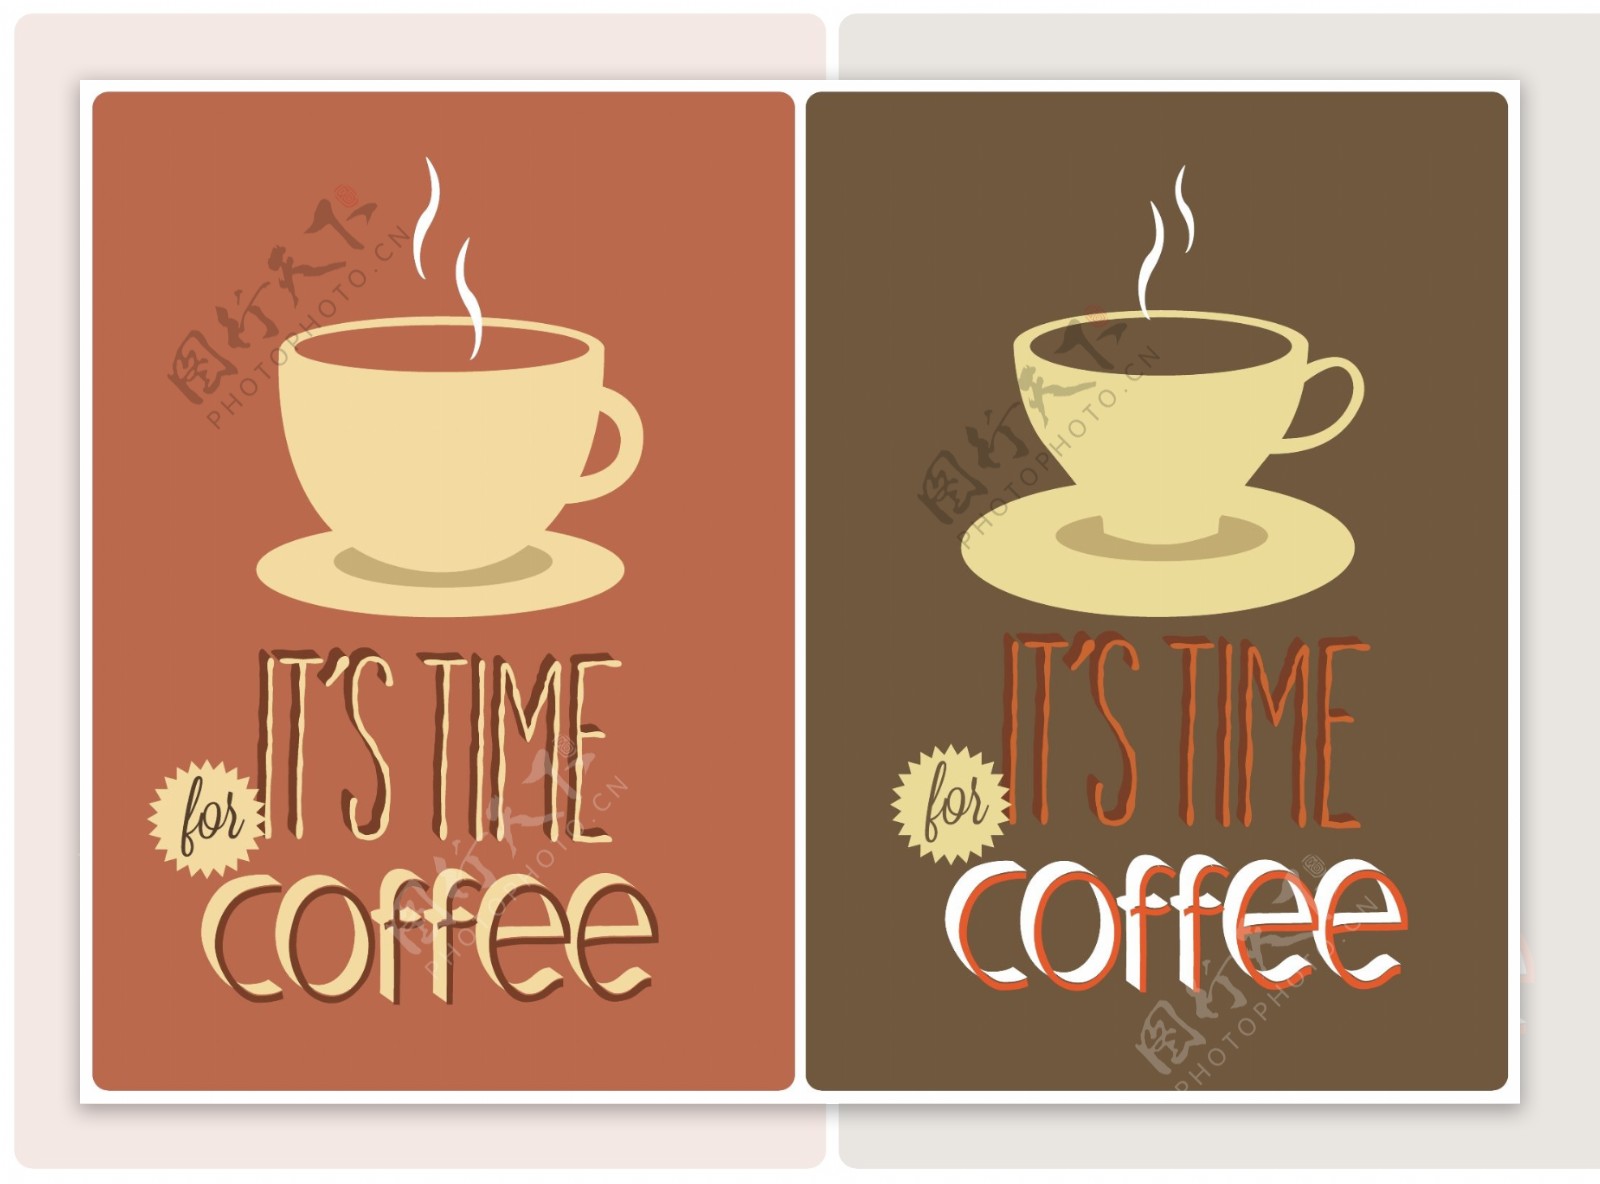 免费咖啡印刷标志